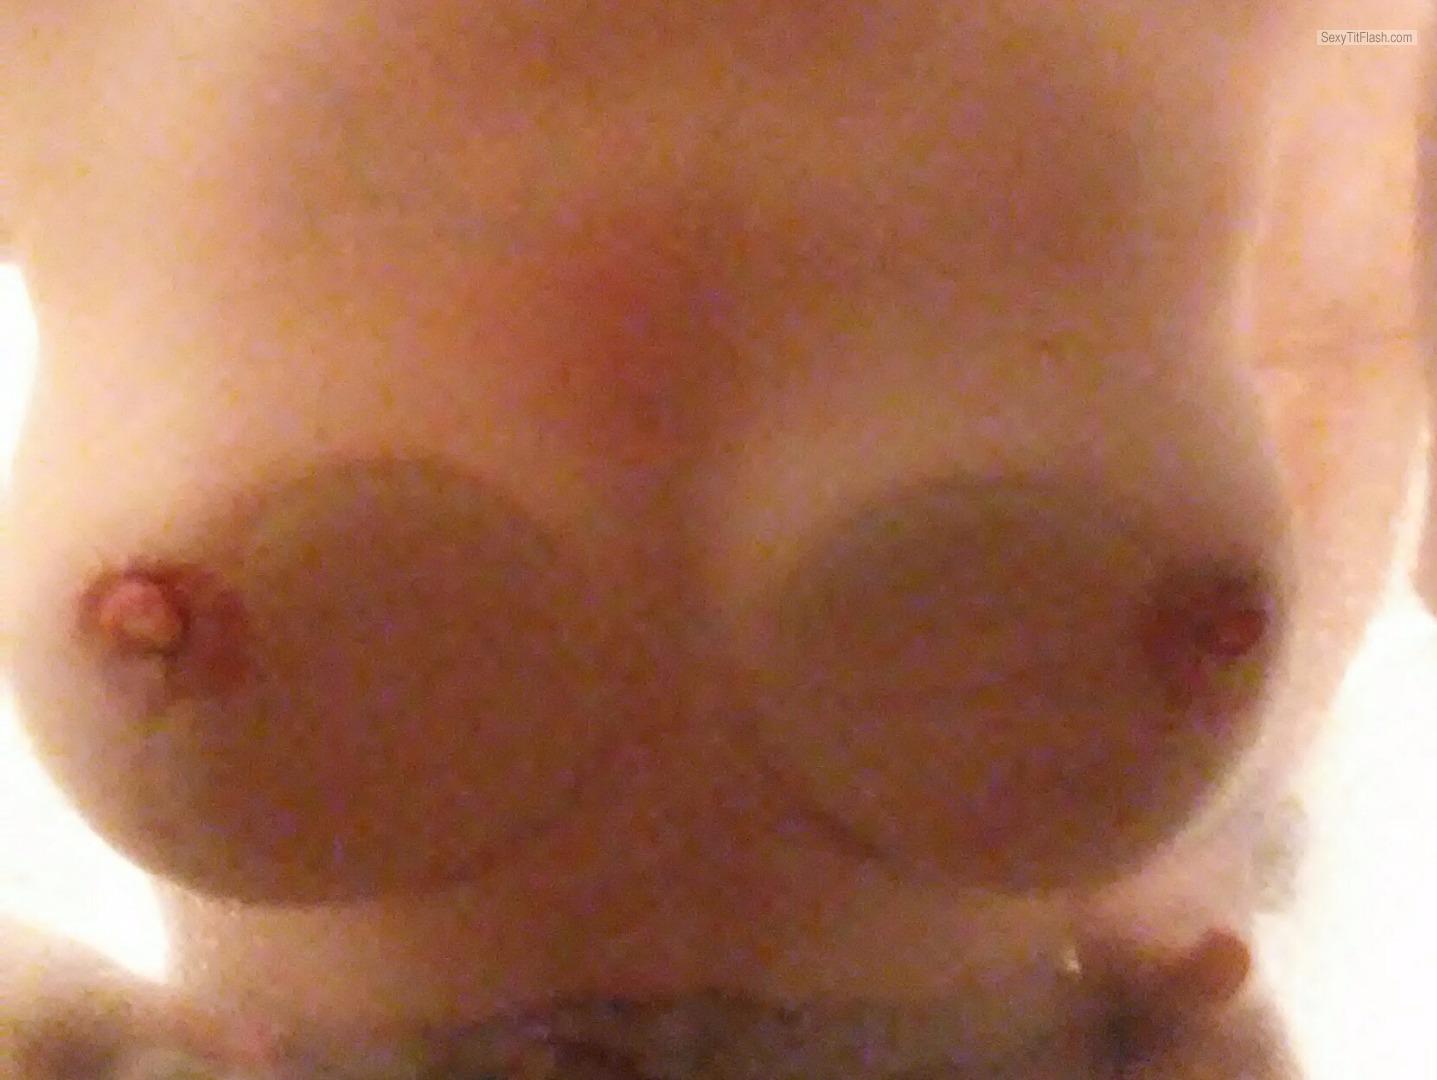 Tit Flash: My Big Tits - Reelnice from United Kingdom